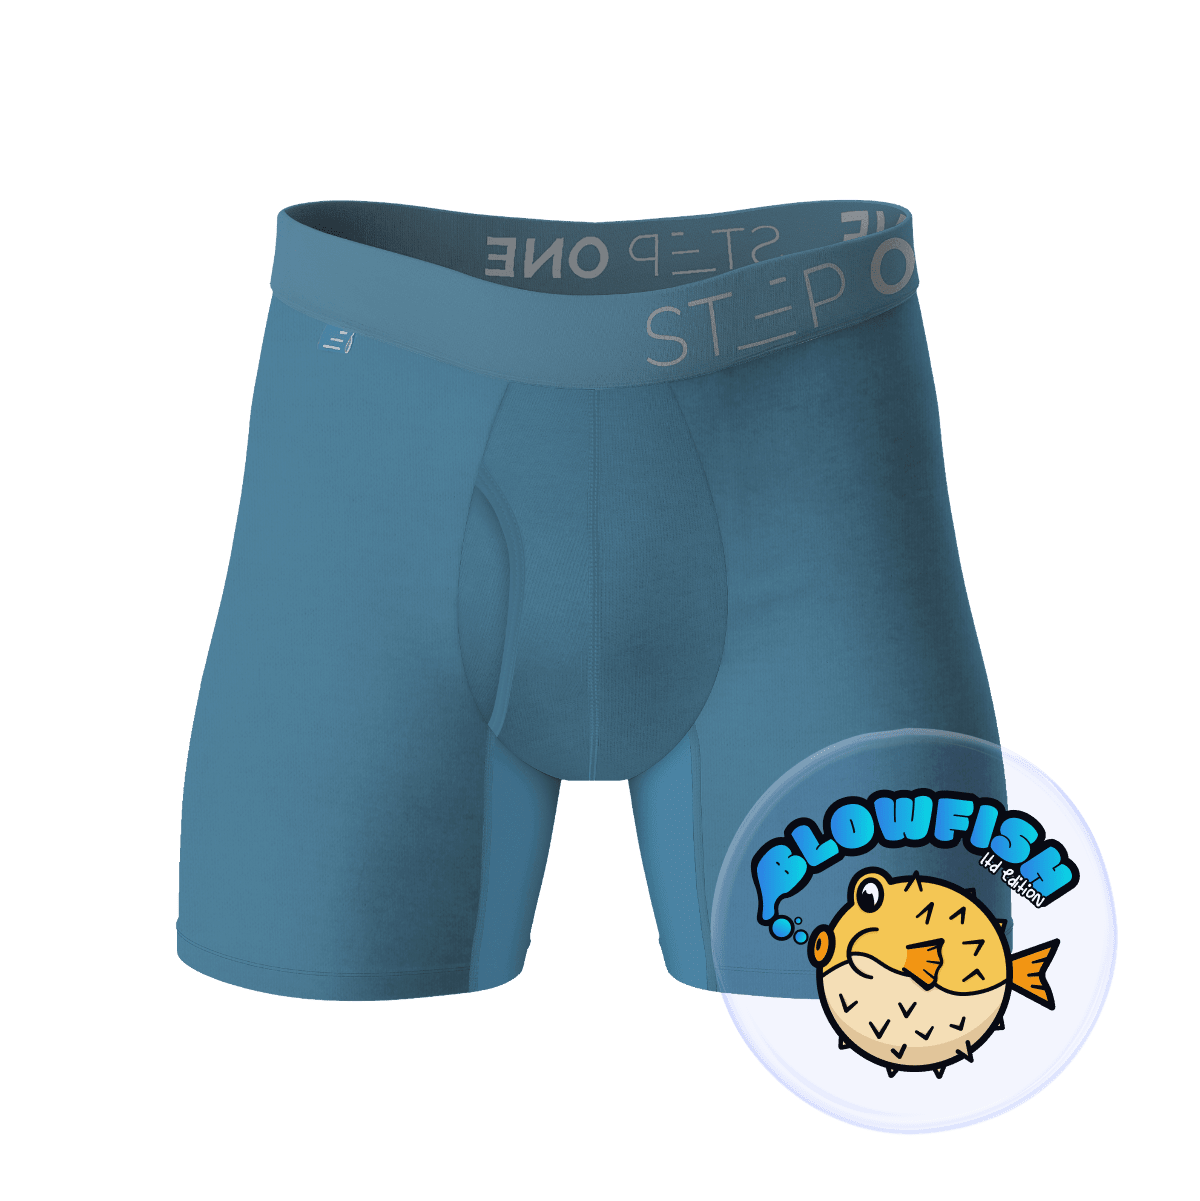 Men's Bamboo Underwear & Boxer Briefs